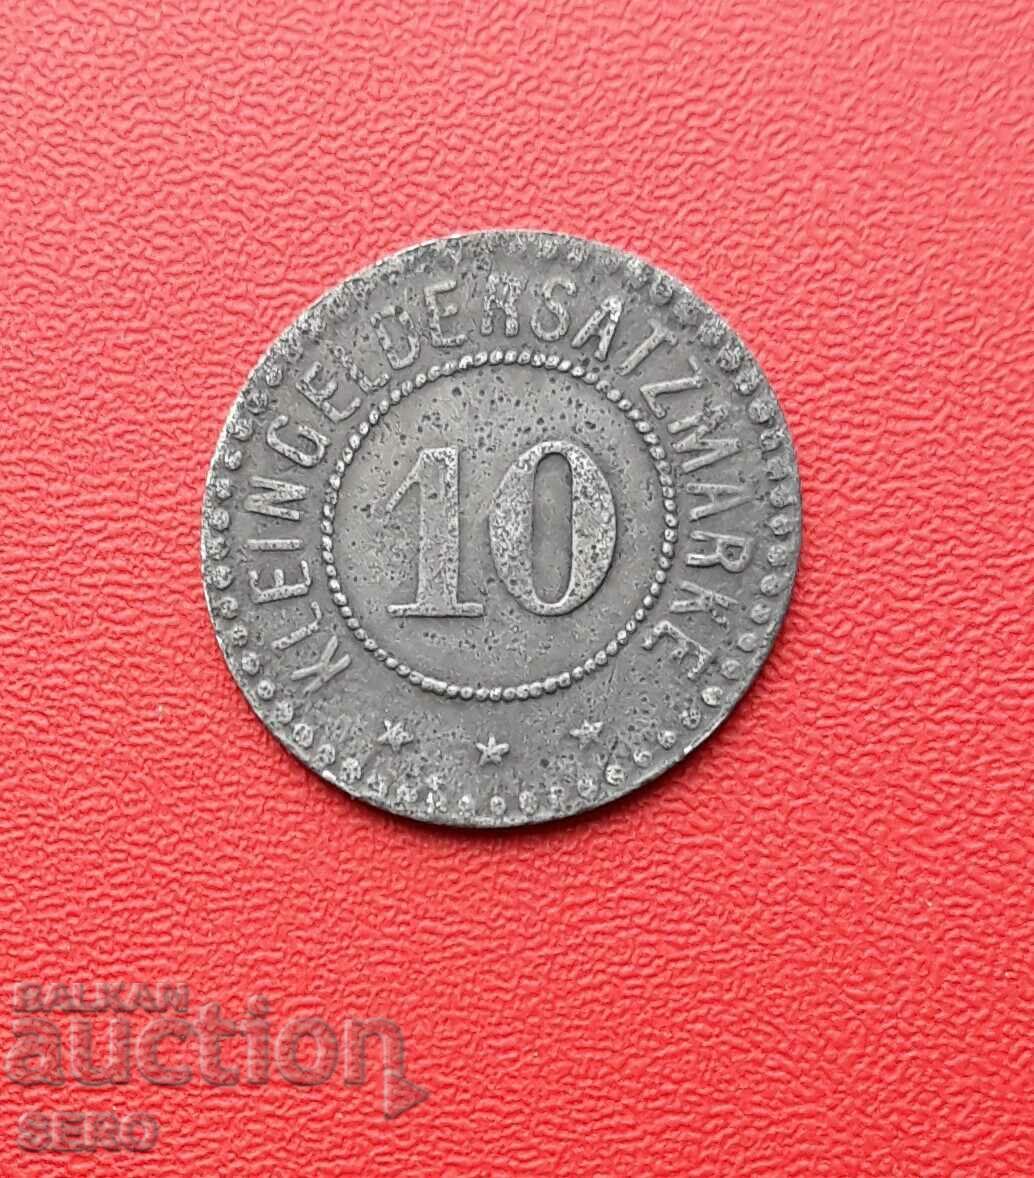 Germania-Hesse-Giessen-10 Pfennig 1918